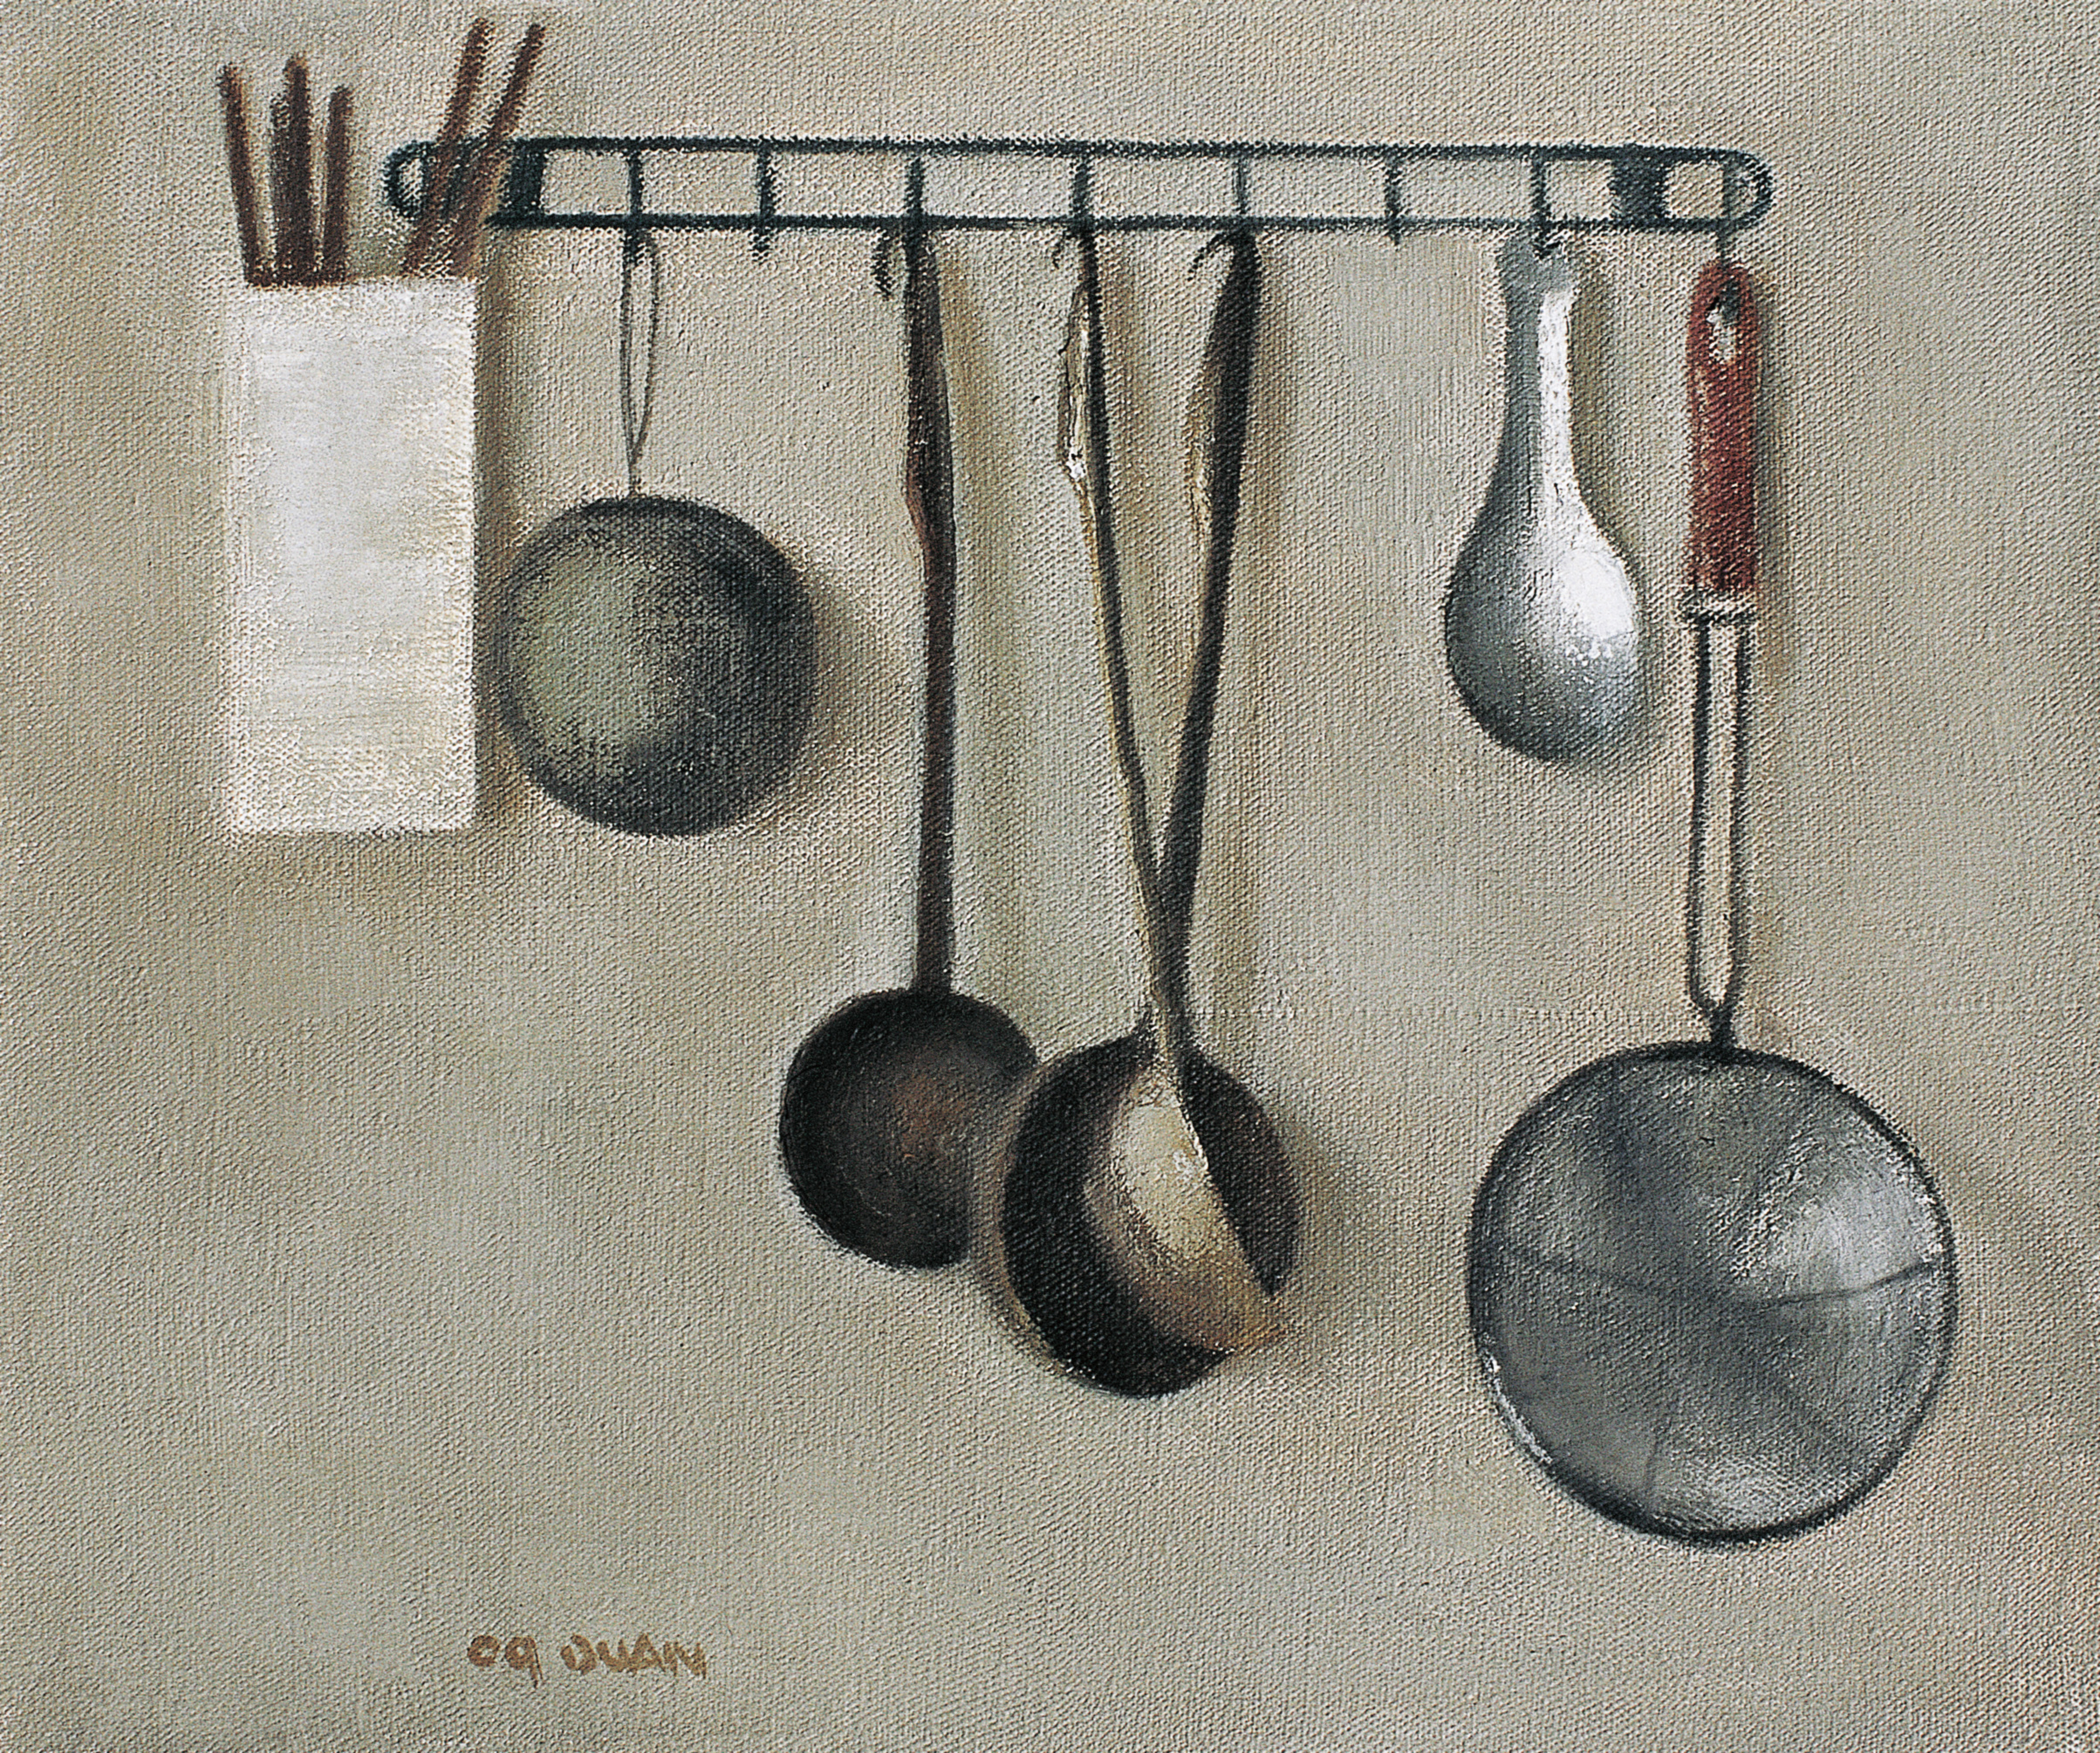 炊具-1 Cookers-1